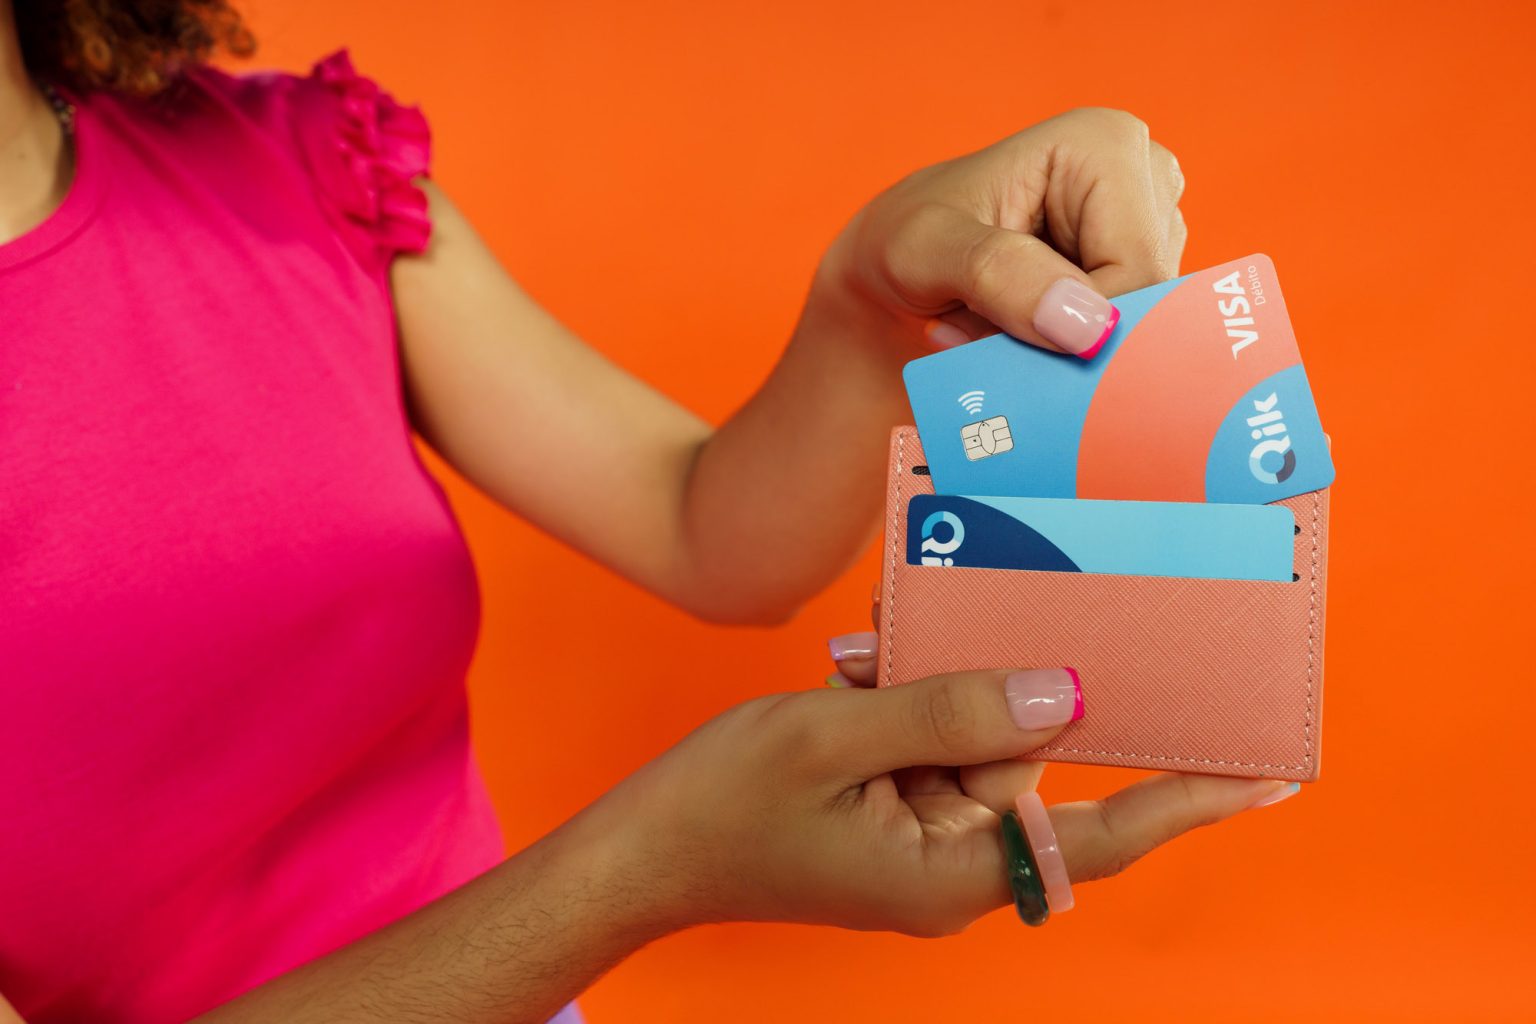 Qik Banco Digital lanza su tarjeta de debito Visa1